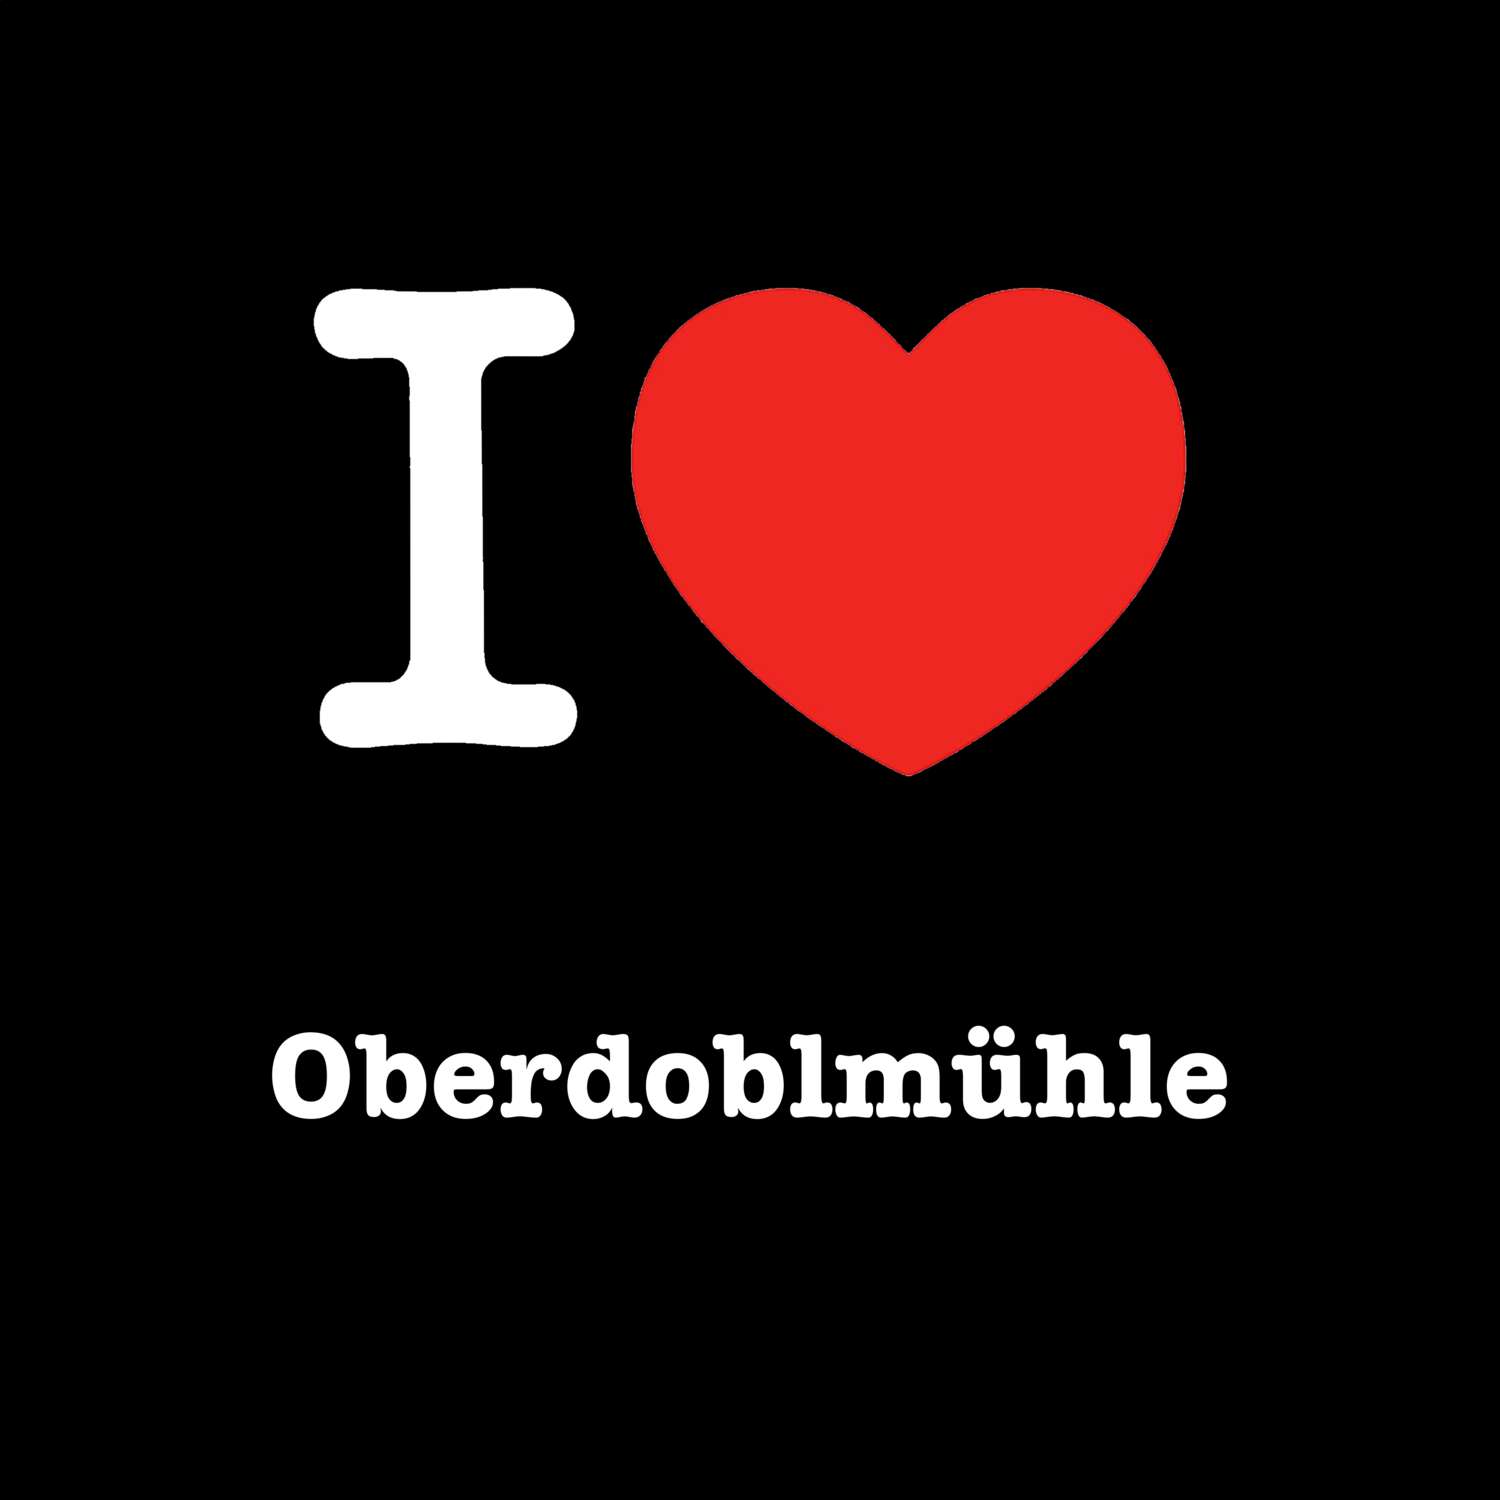 Oberdoblmühle T-Shirt »I love«